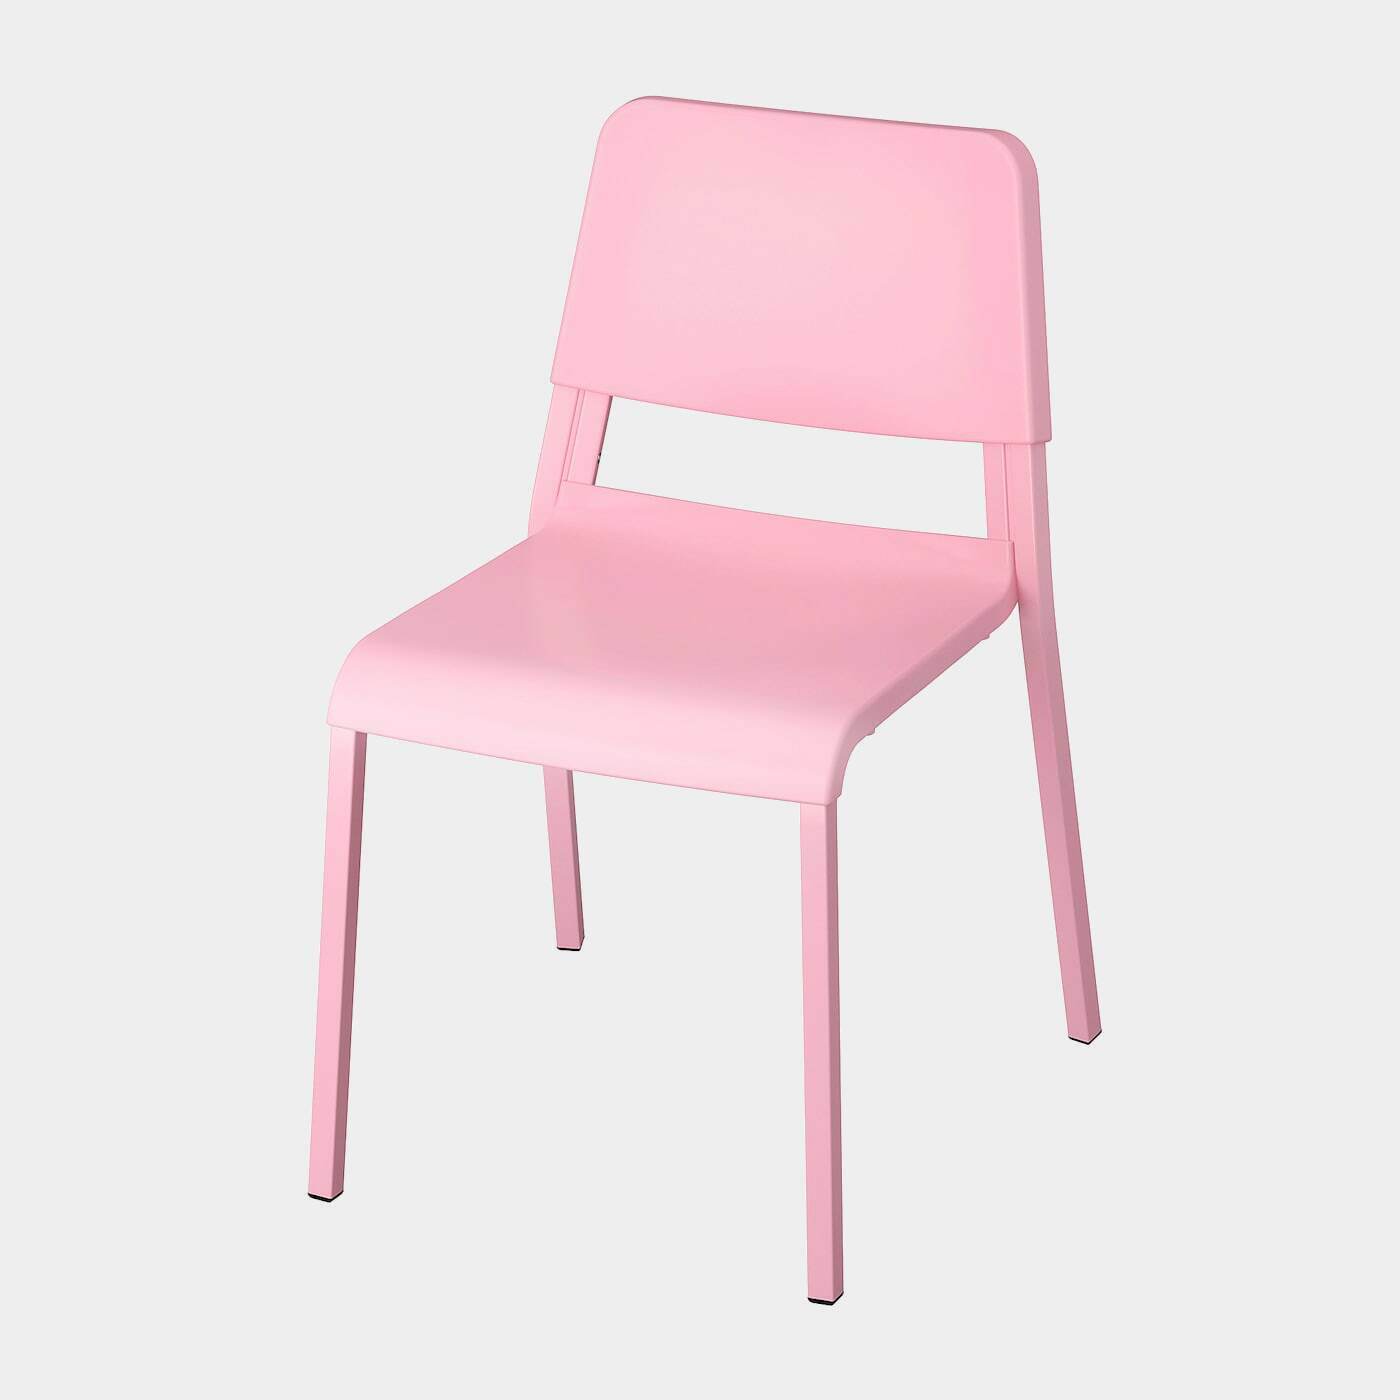 TEODORES Stuhl  -  - Möbel Ideen für dein Zuhause von Home Trends. Möbel Trends von Social Media Influencer für dein Skandi Zuhause.